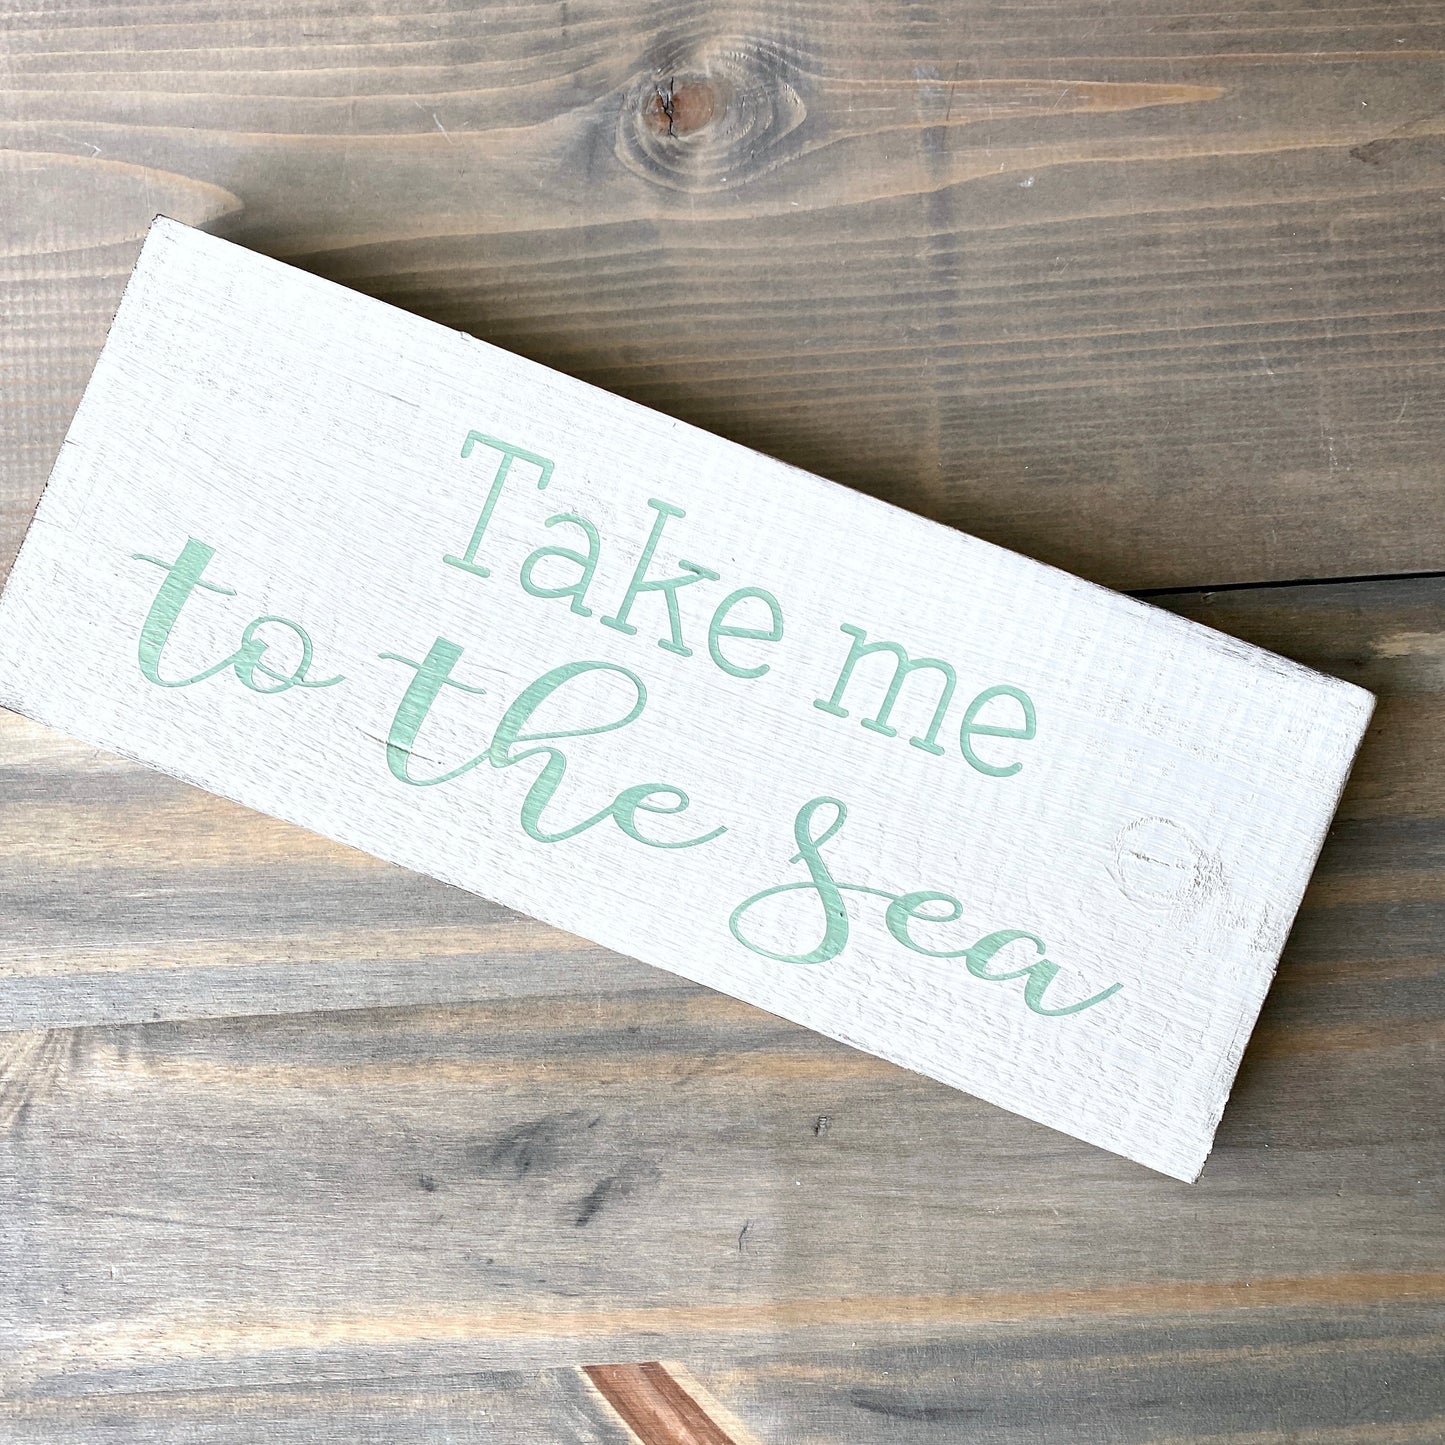 Take Me To The Sea Sign